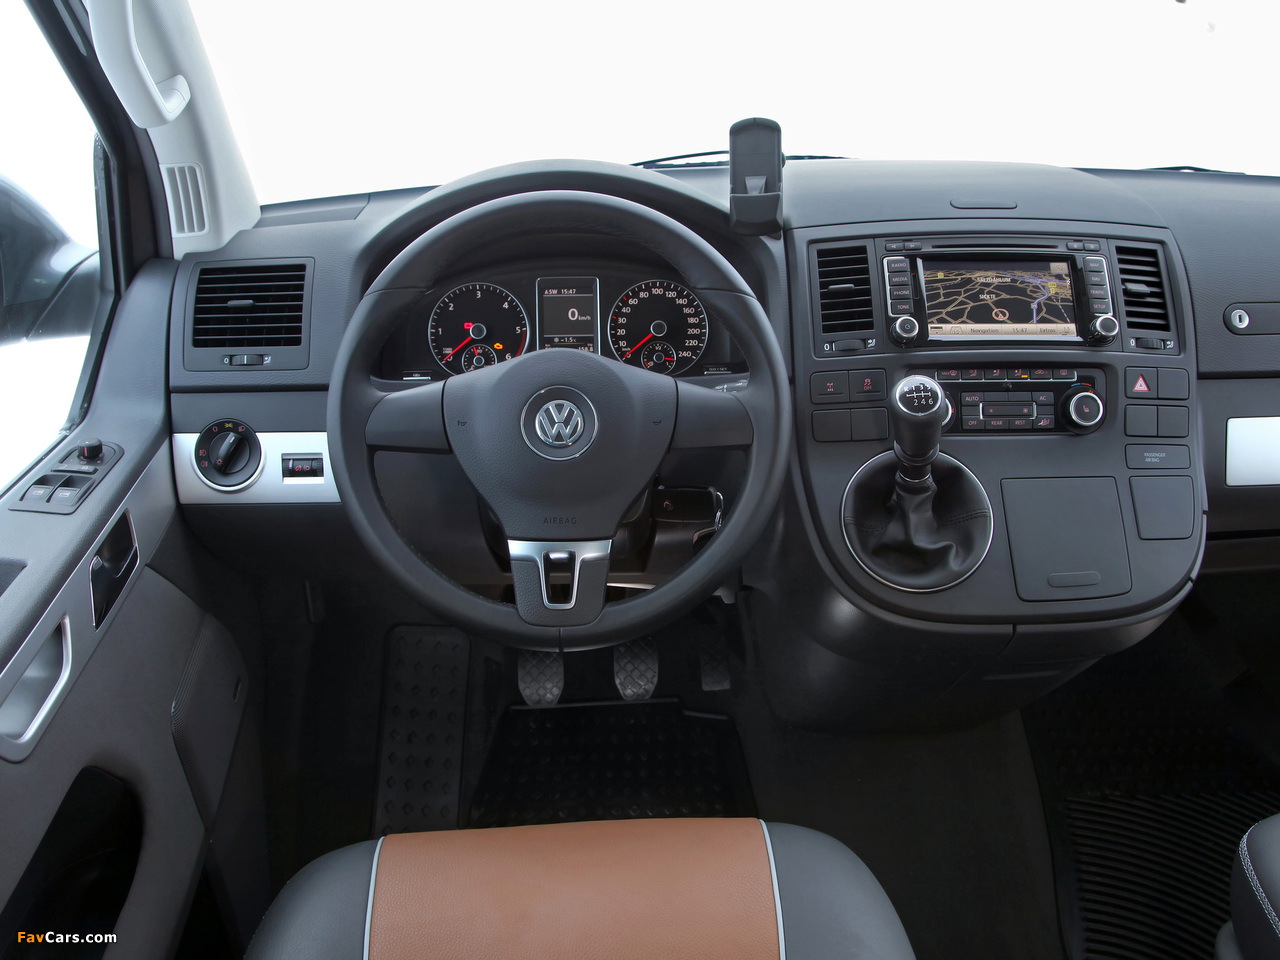 Volkswagen T5 Multivan Panamericana 2009 photos (1280 x 960)